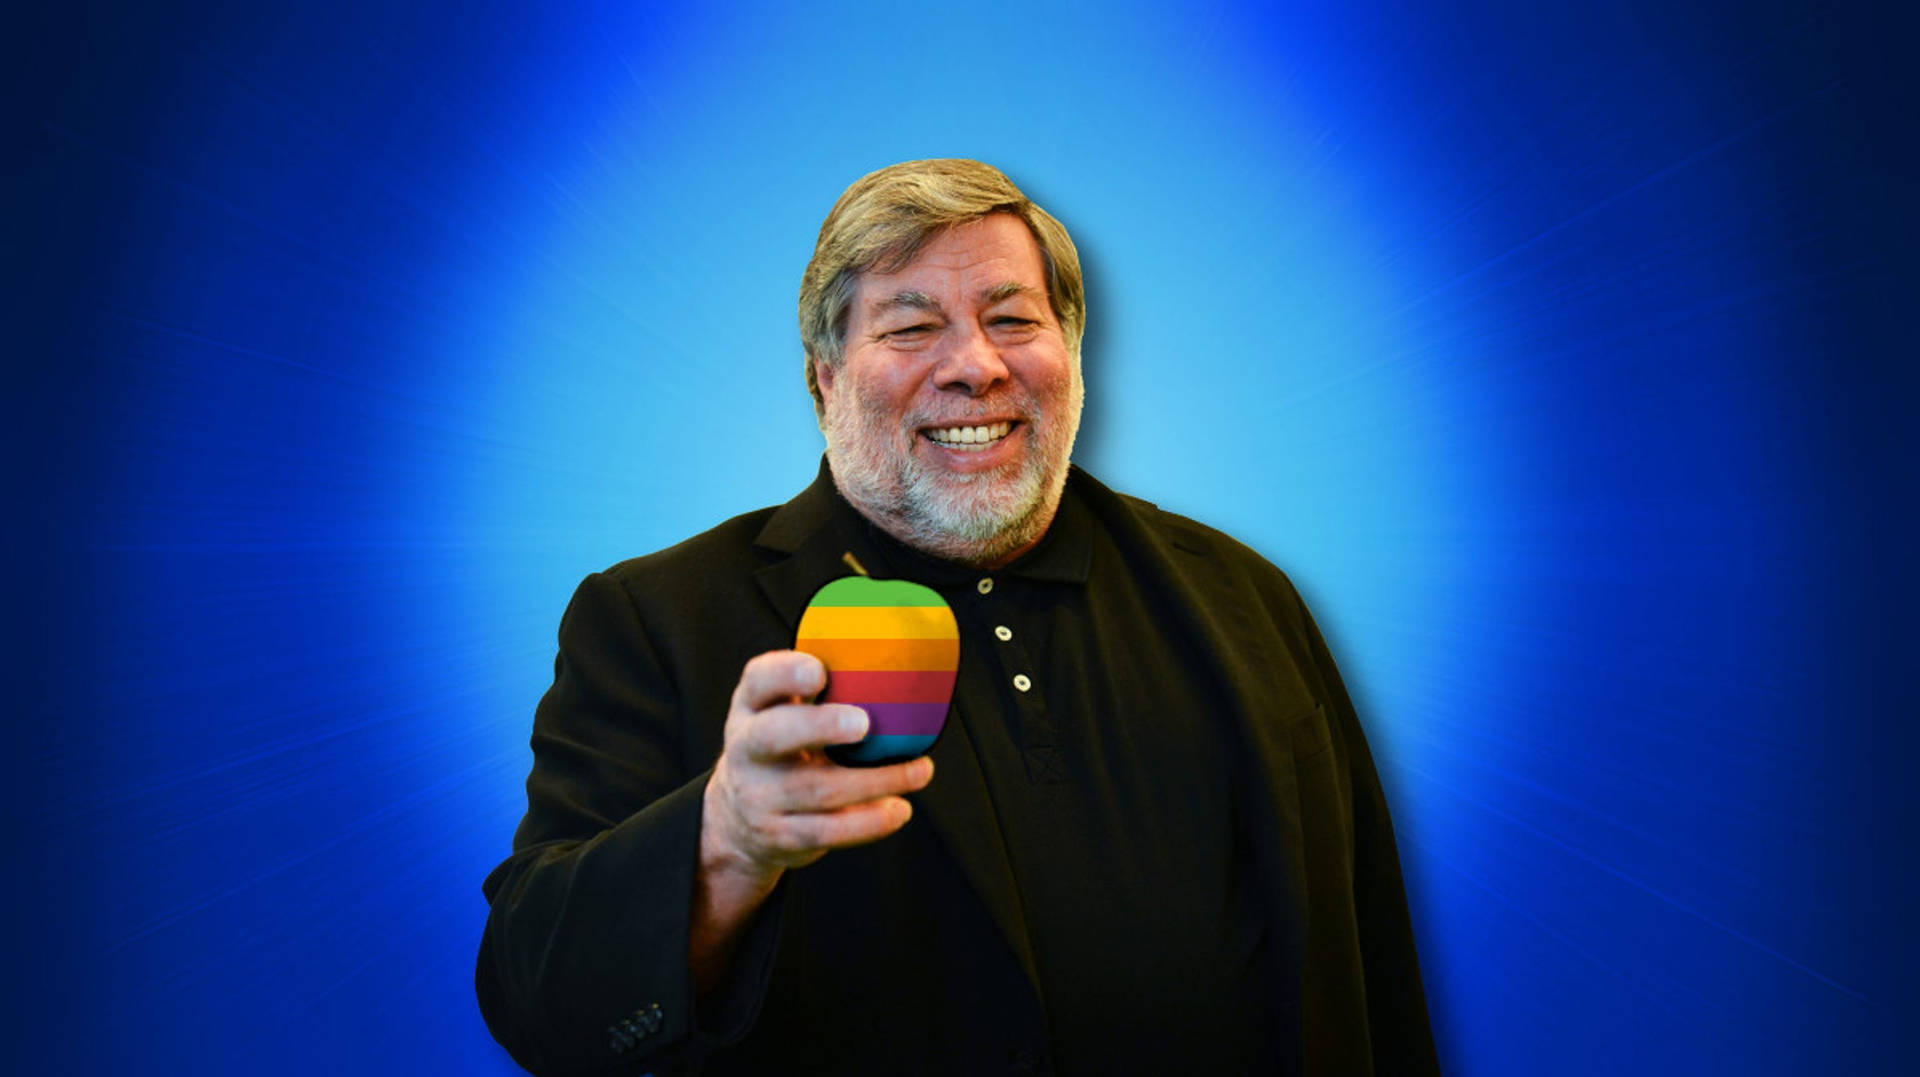 Steve Wozniak Background Wallpaper